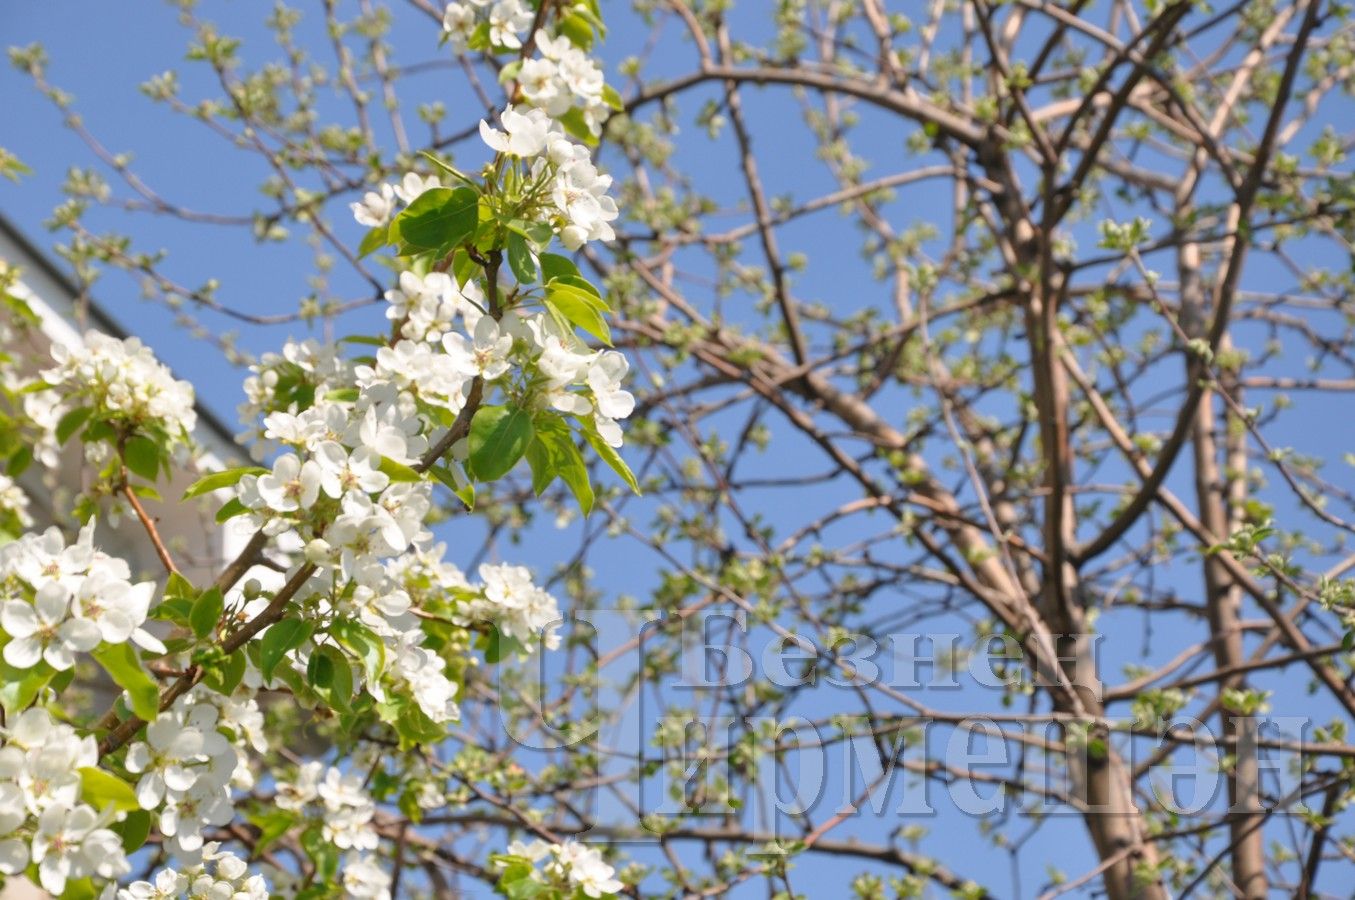 В Черемшан пришла настоящая весна (ФОТОРЕПОРТАЖ)